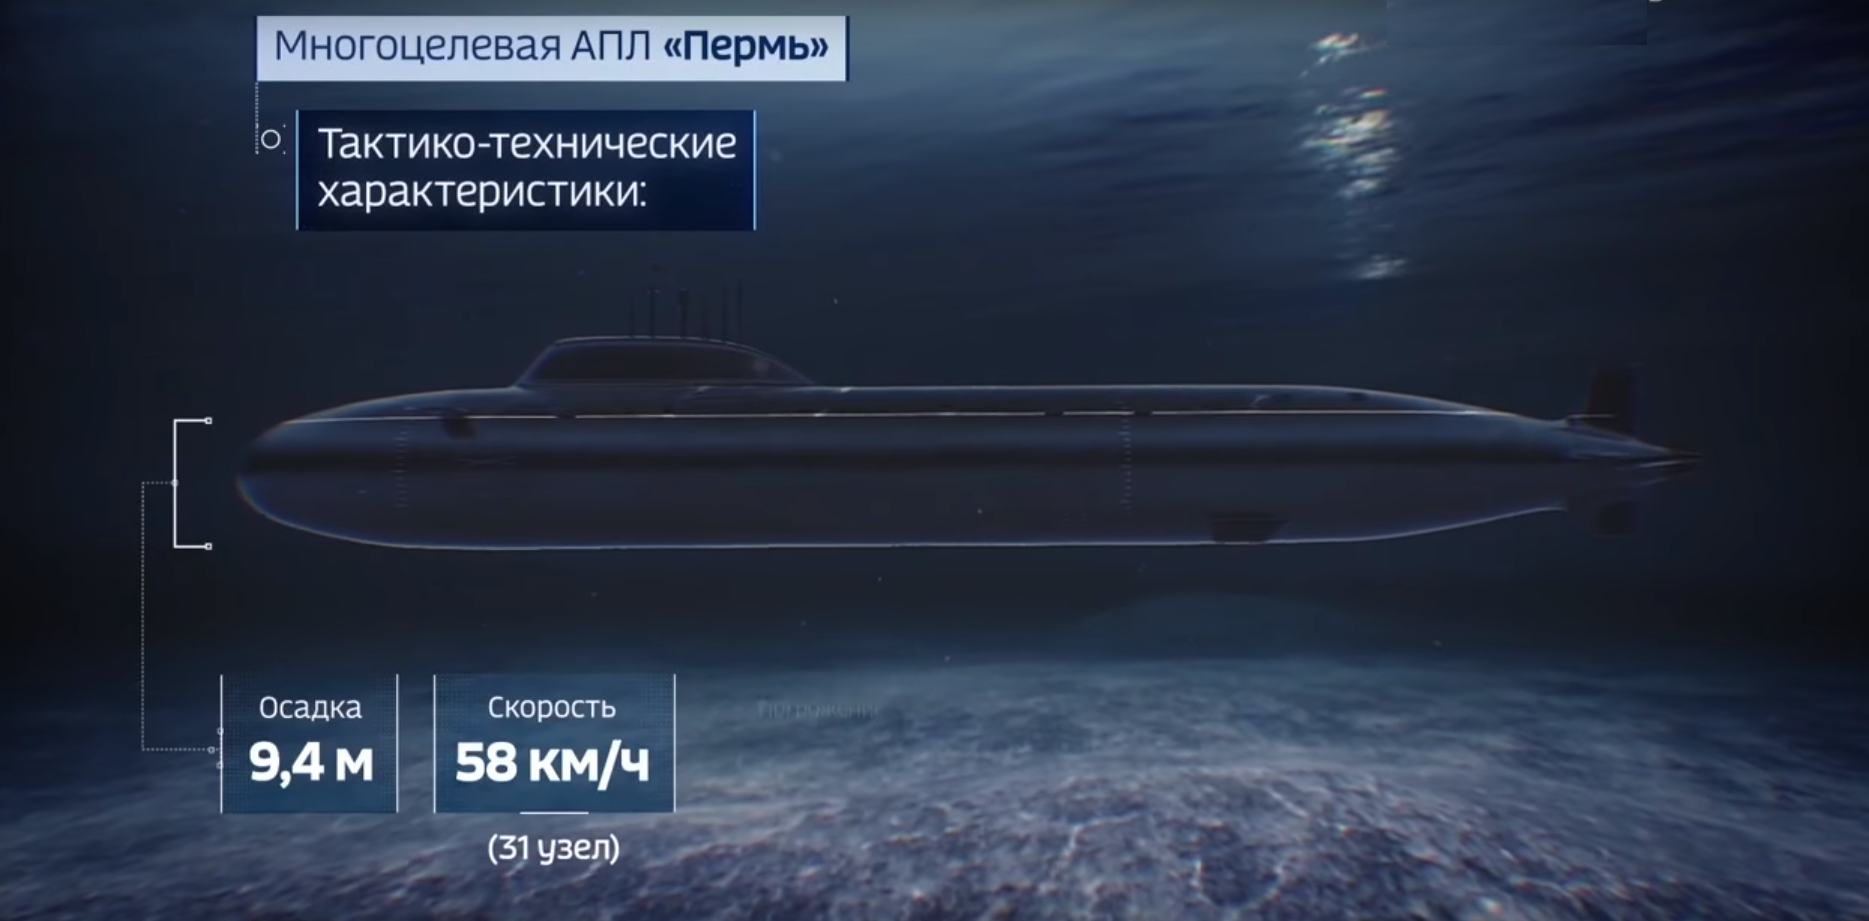 АПЛ «Пермь»: ренессанс российского атомного флота